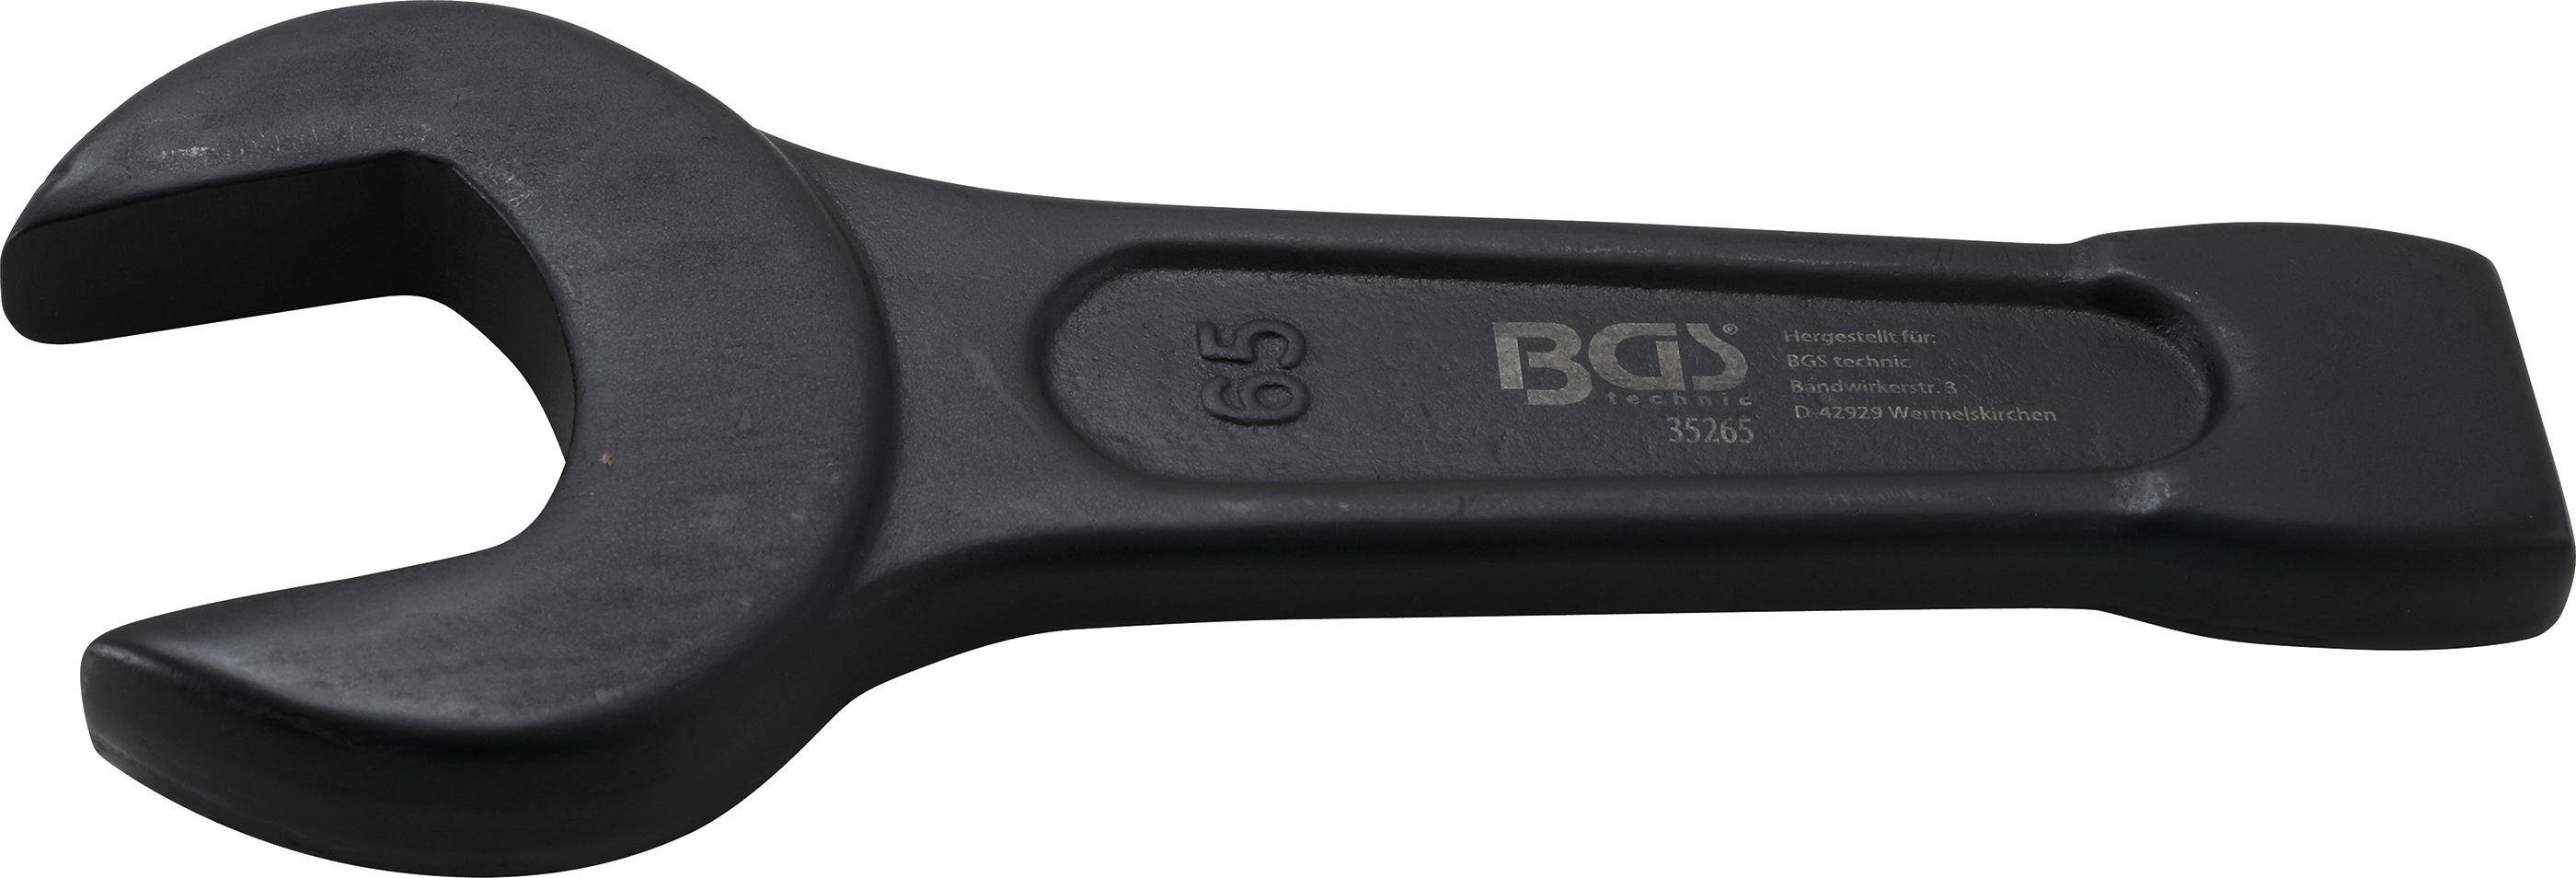 BGS technic Maulschlüssel Schlag-Maulschlüssel, SW 65 mm